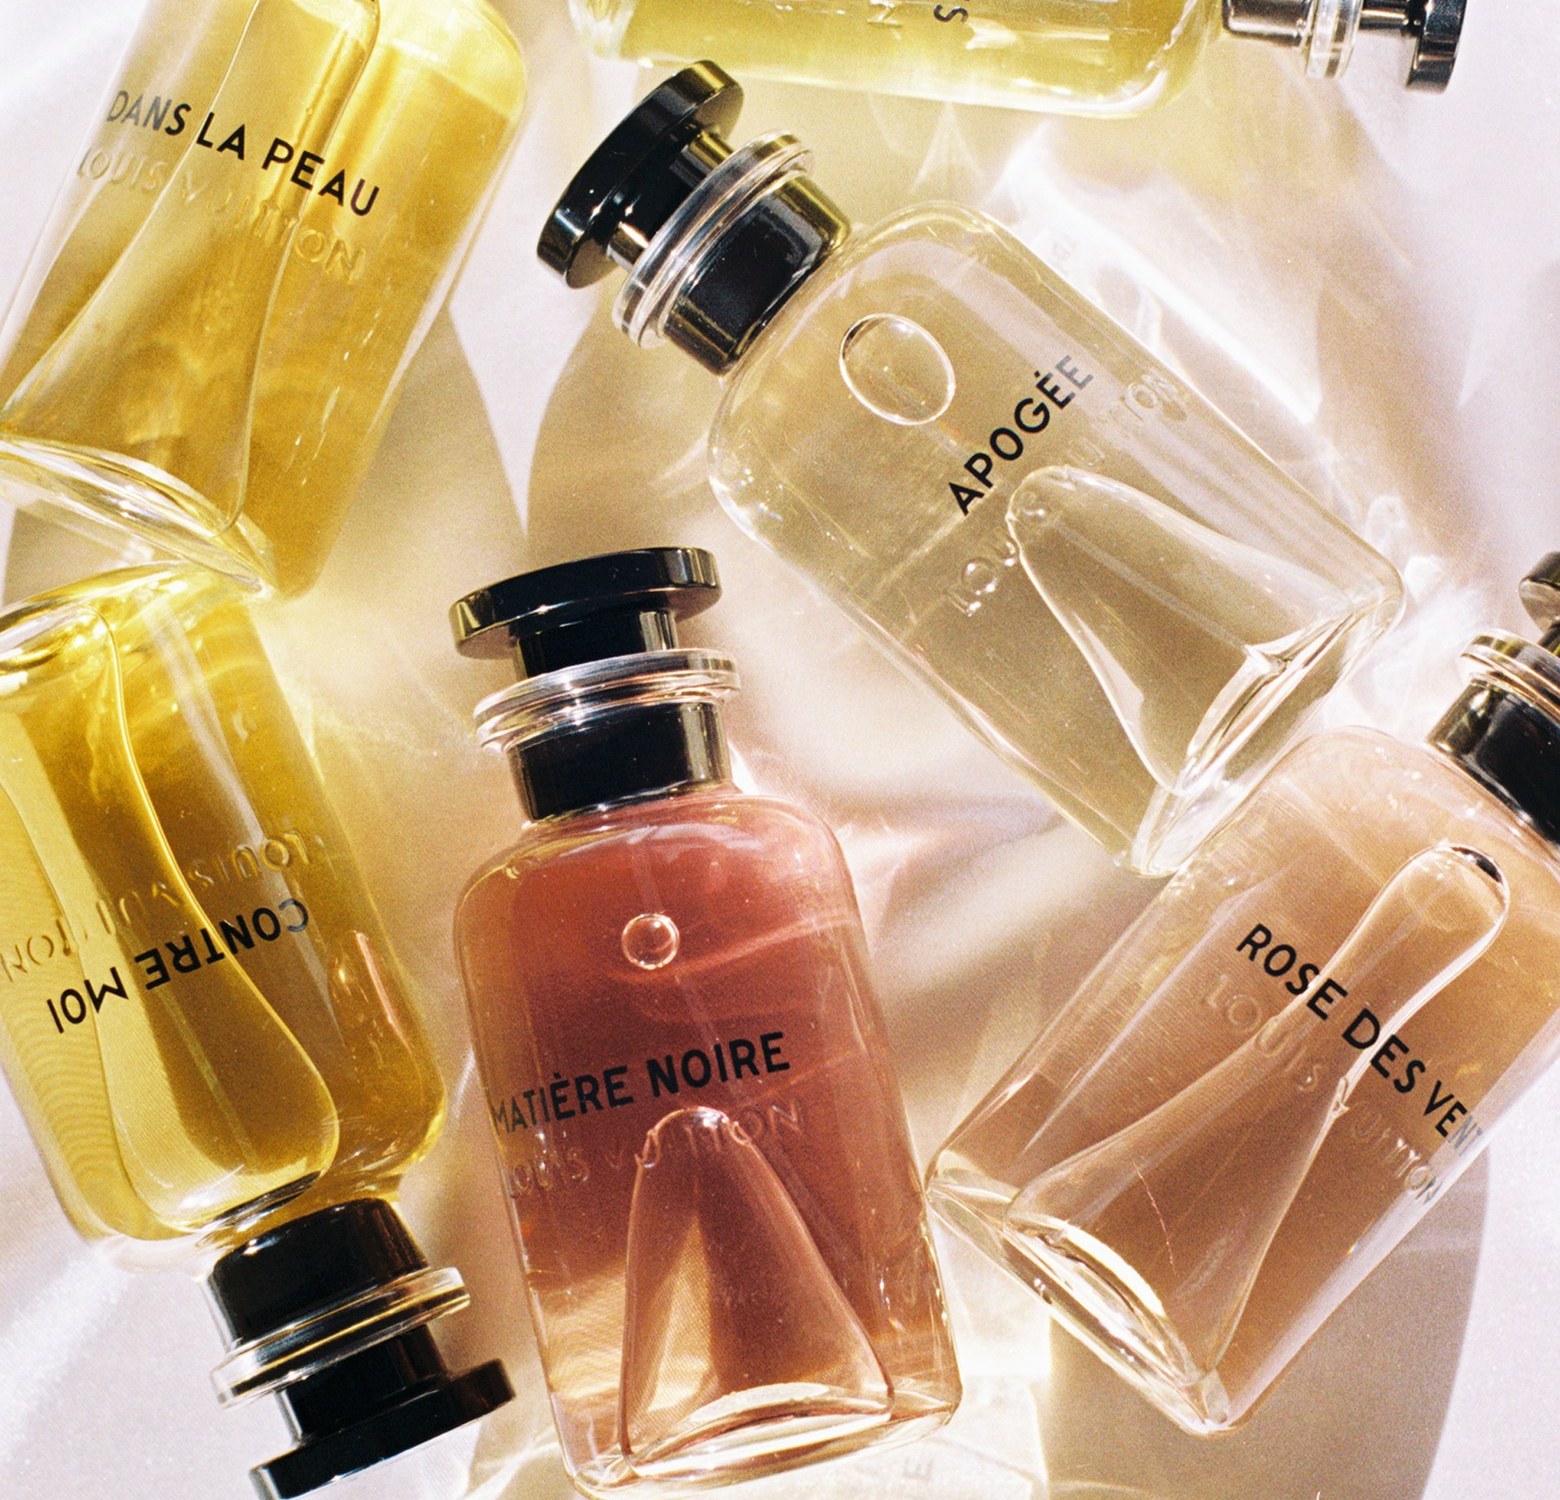 Dans la Peau Louis Vuitton perfume - a fragrance for women 2016